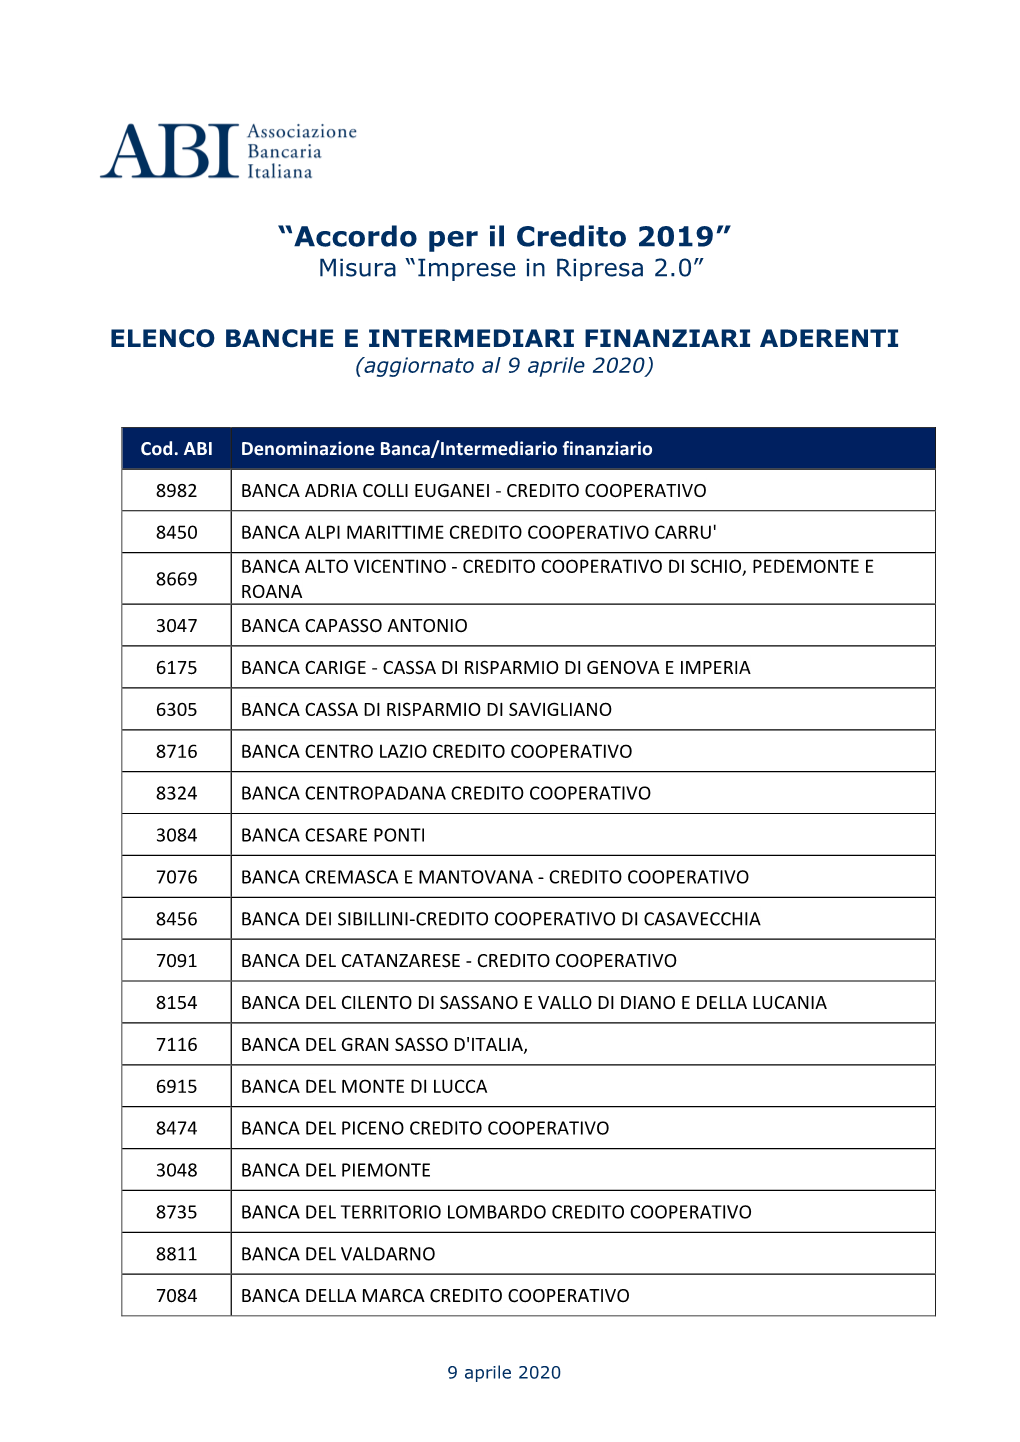 ELENCO BANCHE E INTERMEDIARI FINANZIARI ADERENTI (Aggiornato Al 9 Aprile 2020)